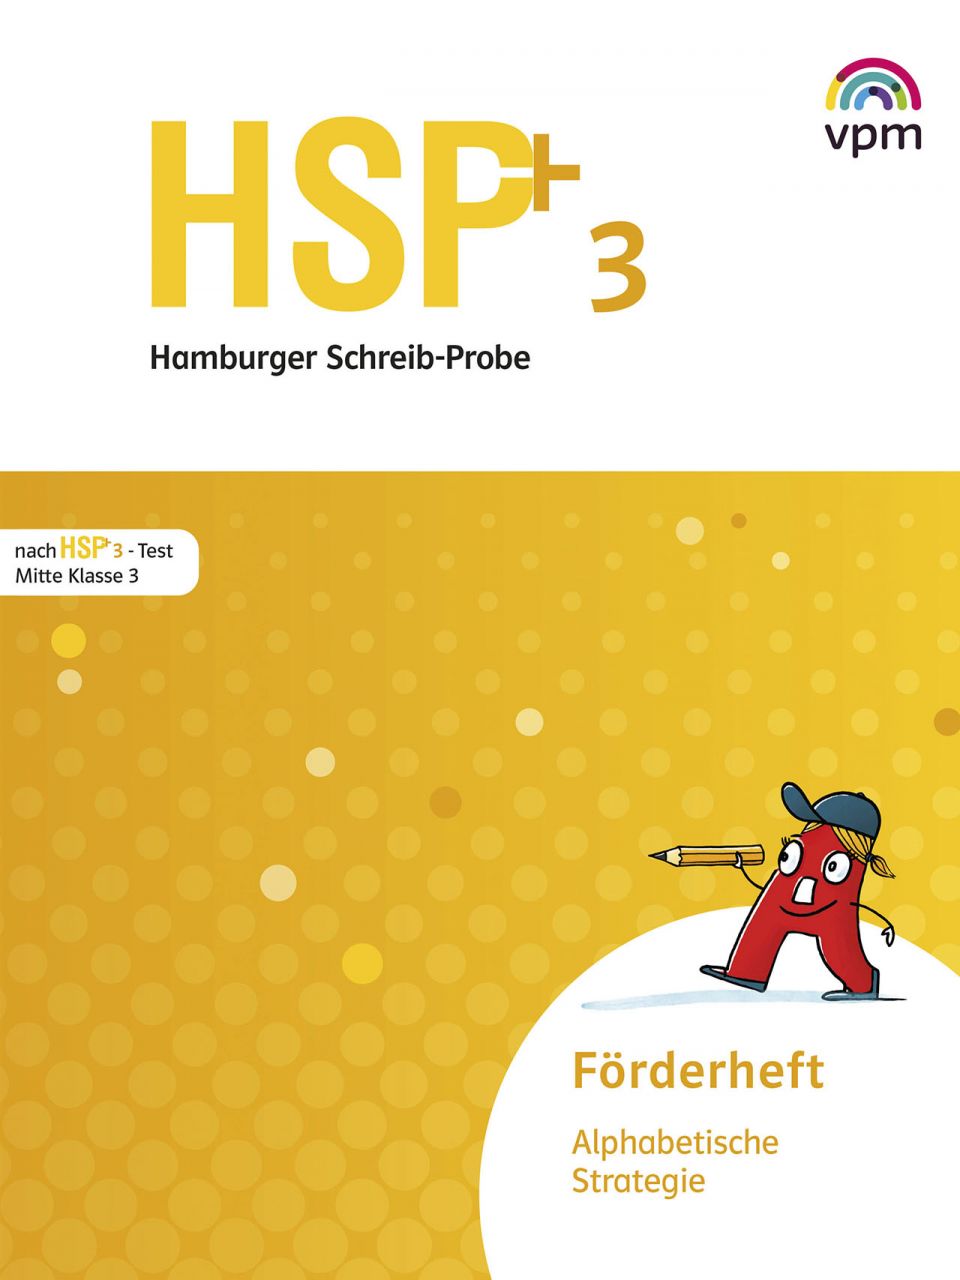 HSP - Fördern 3 - Alphabetische Strategie